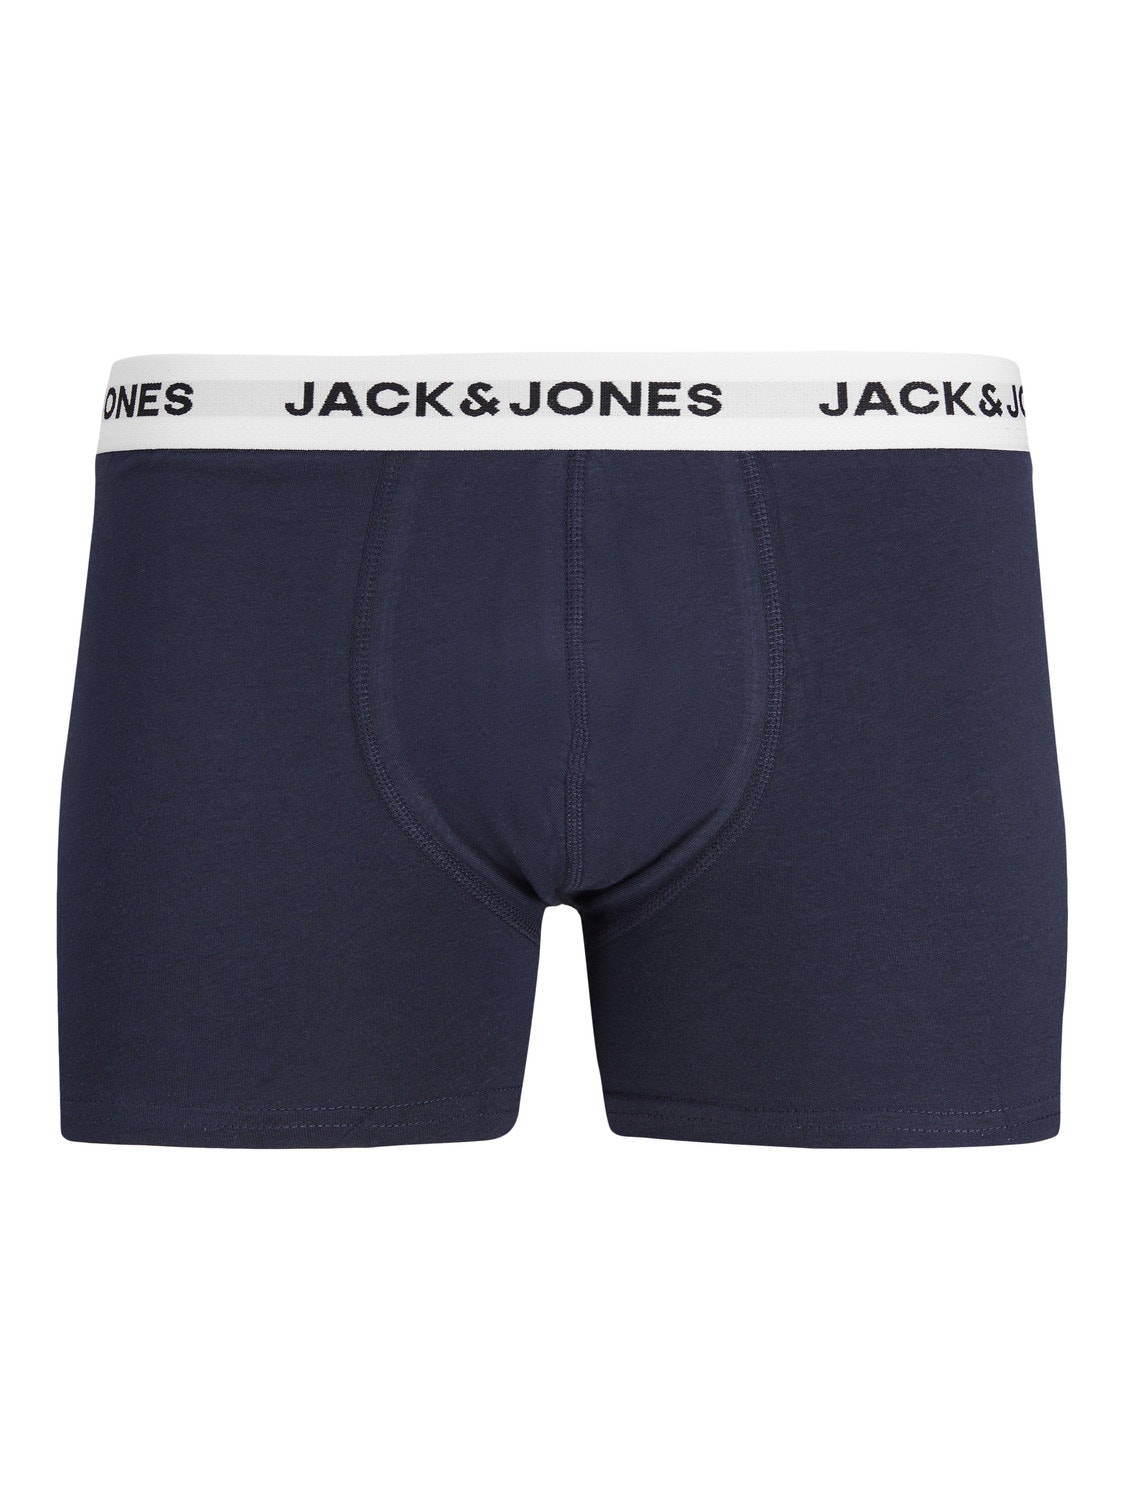 Jack & Jones Pack de 5 Boxers -Forest Night - 12214455